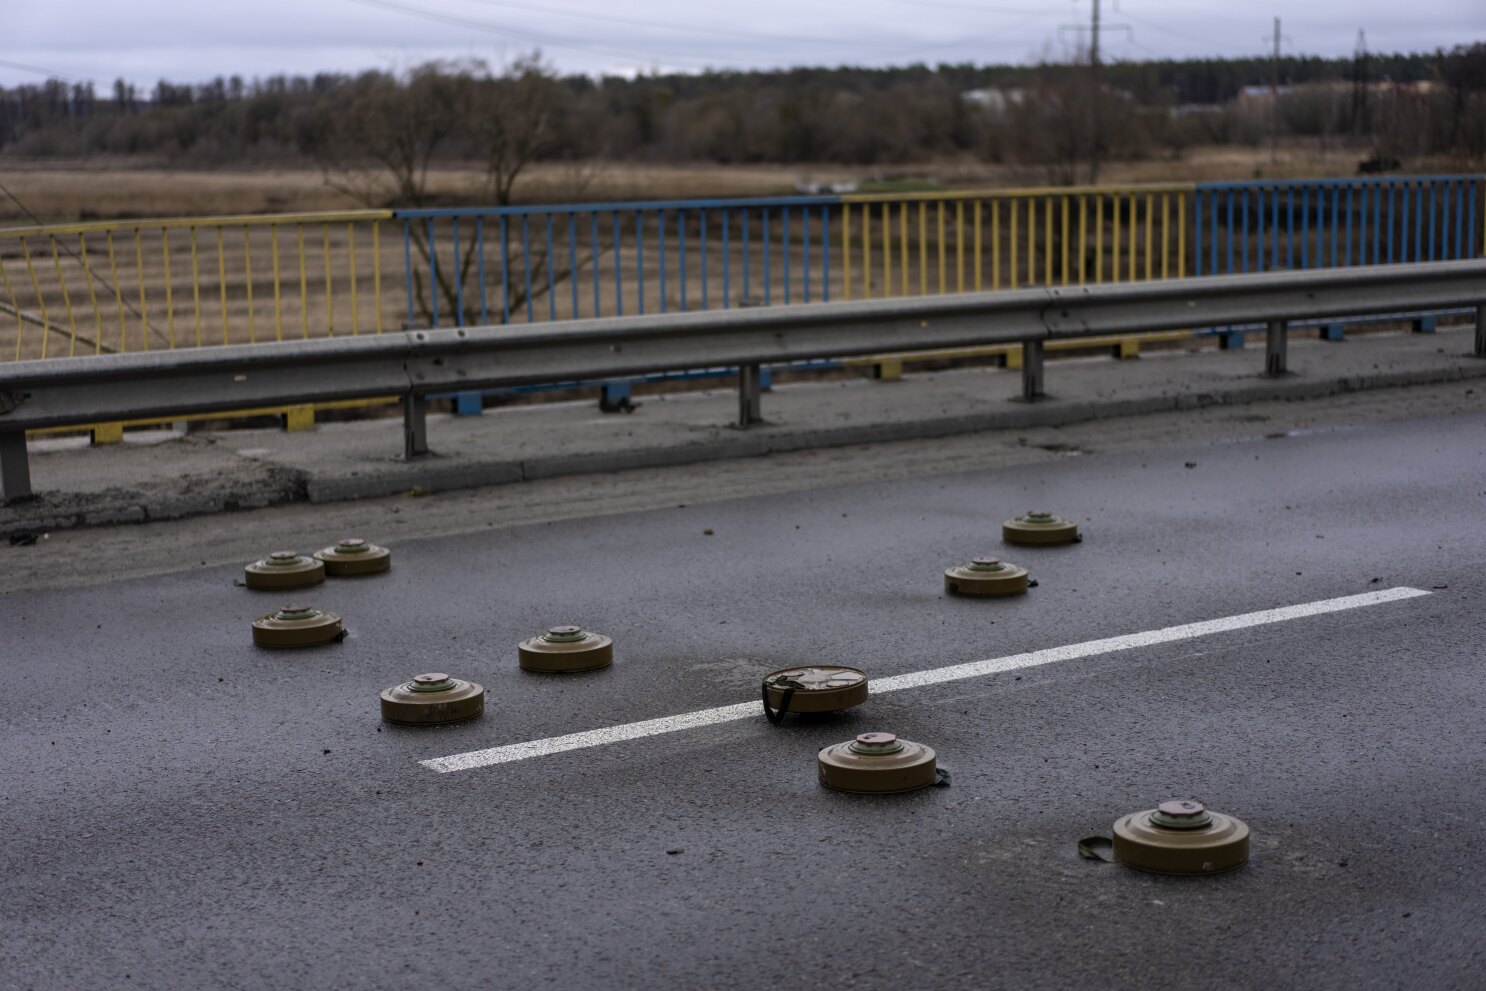 Piden a Rusia que deje de usar minas terrestres en Ucrania - Los Angeles  Times